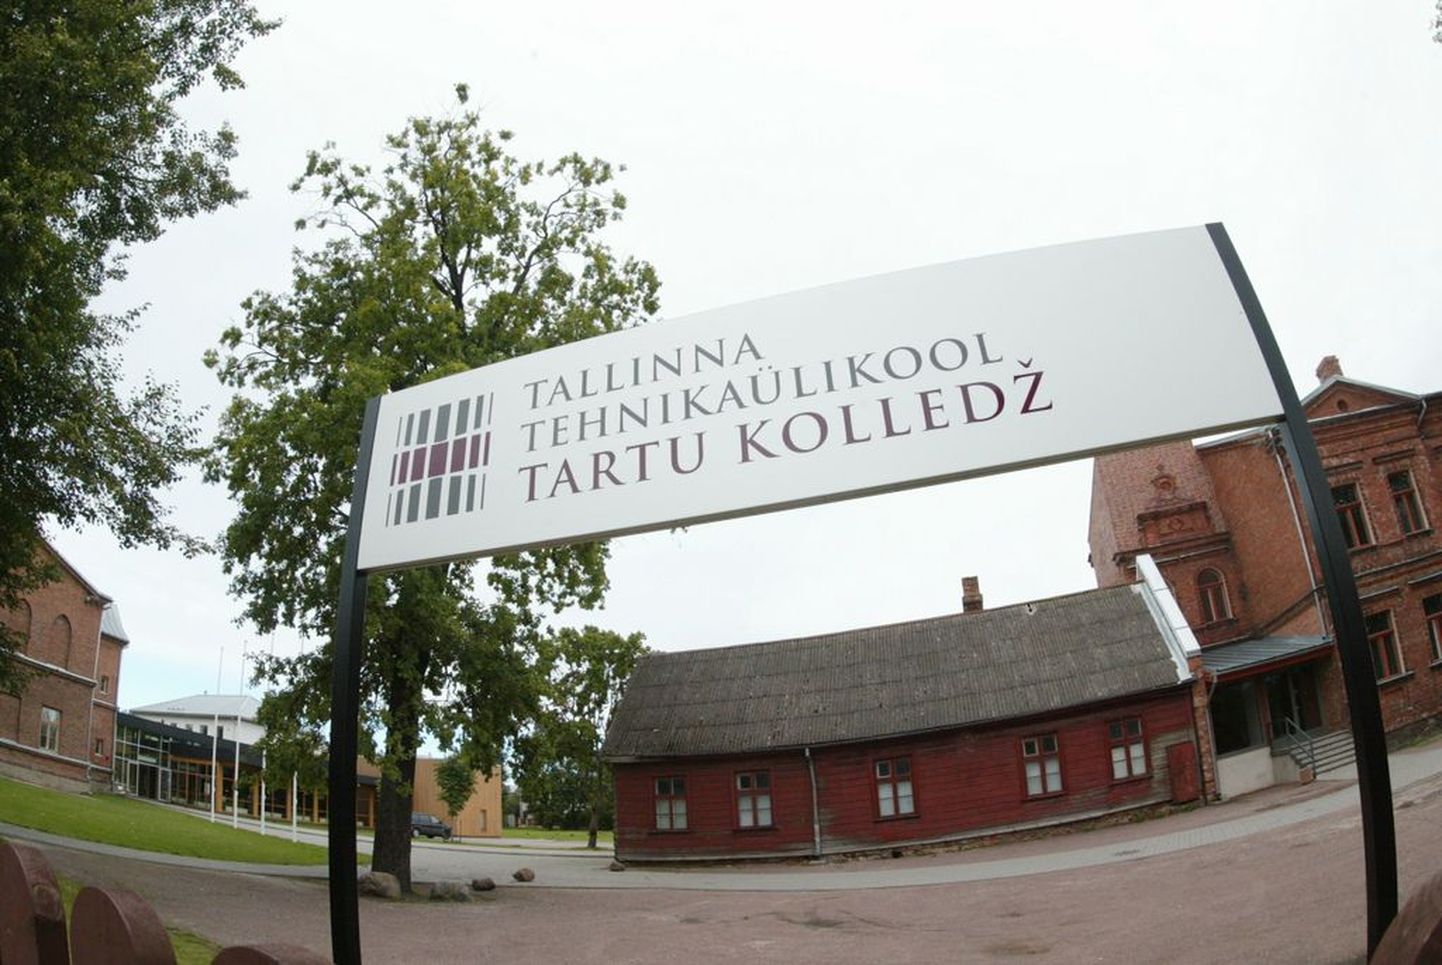 Tallinna Tehnikaülikooli Tartu kolled.